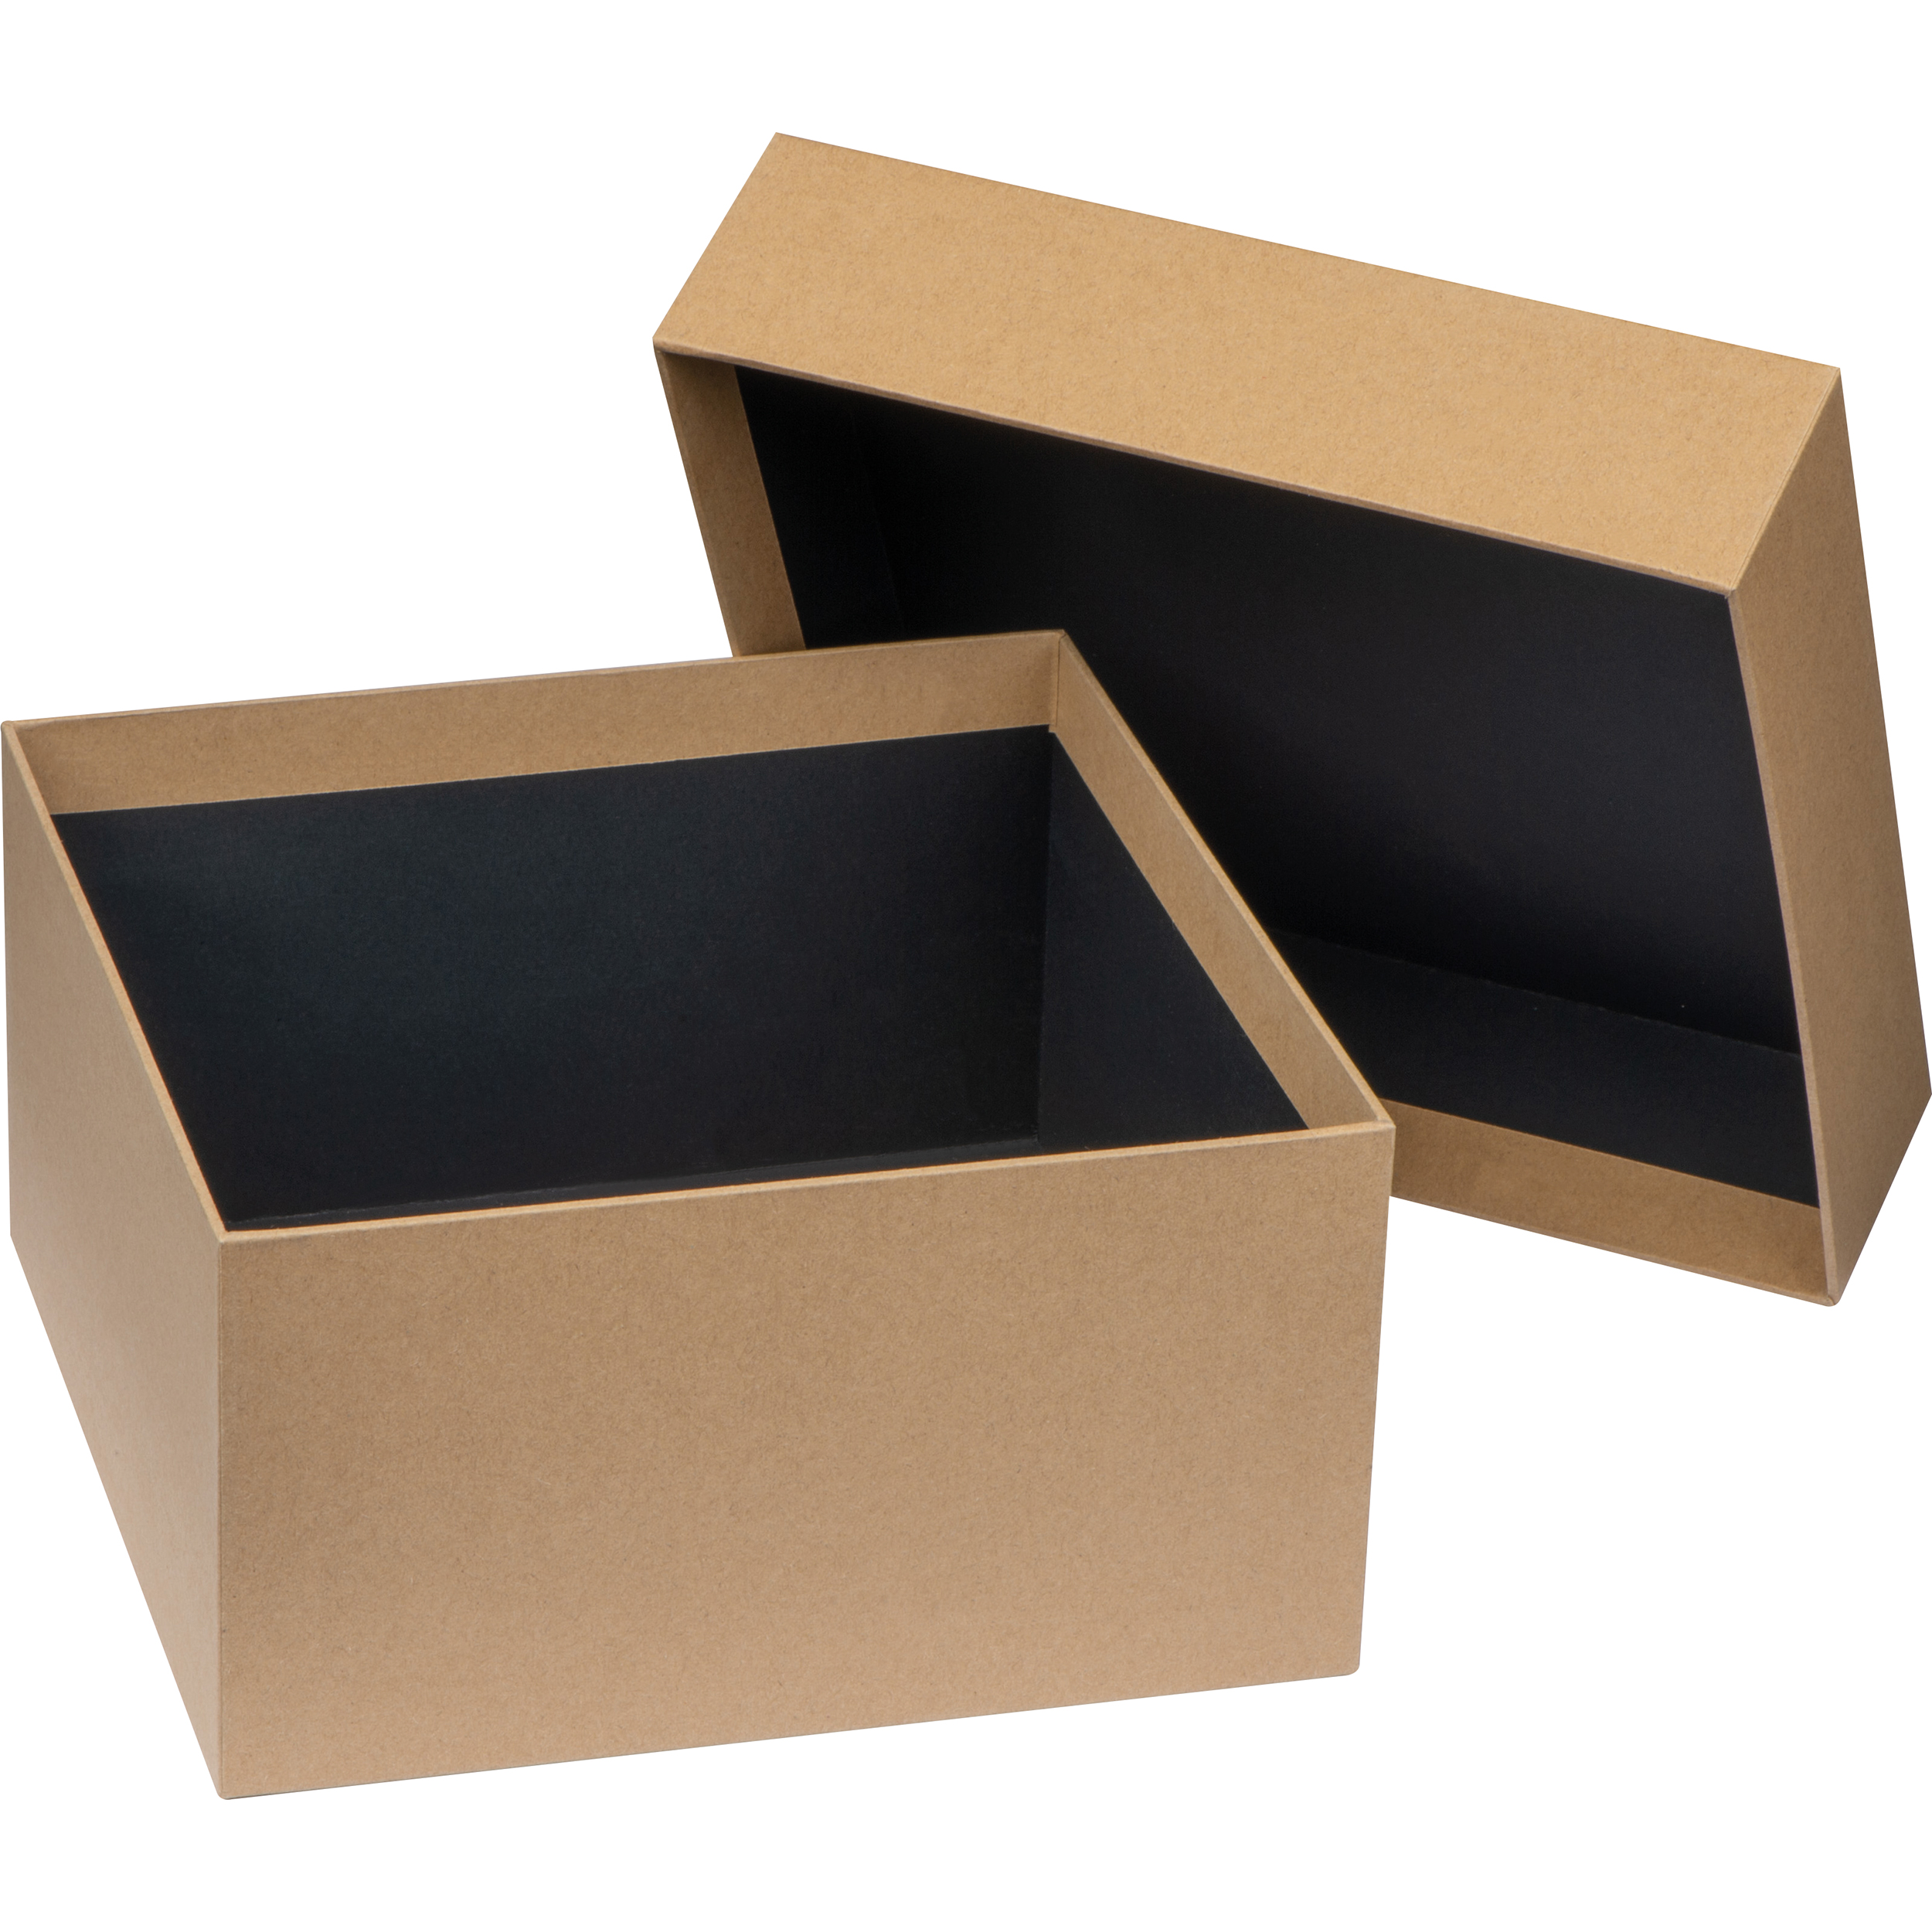 Hazelbury Bryan Gift Box with Customizable Print - Walberswick